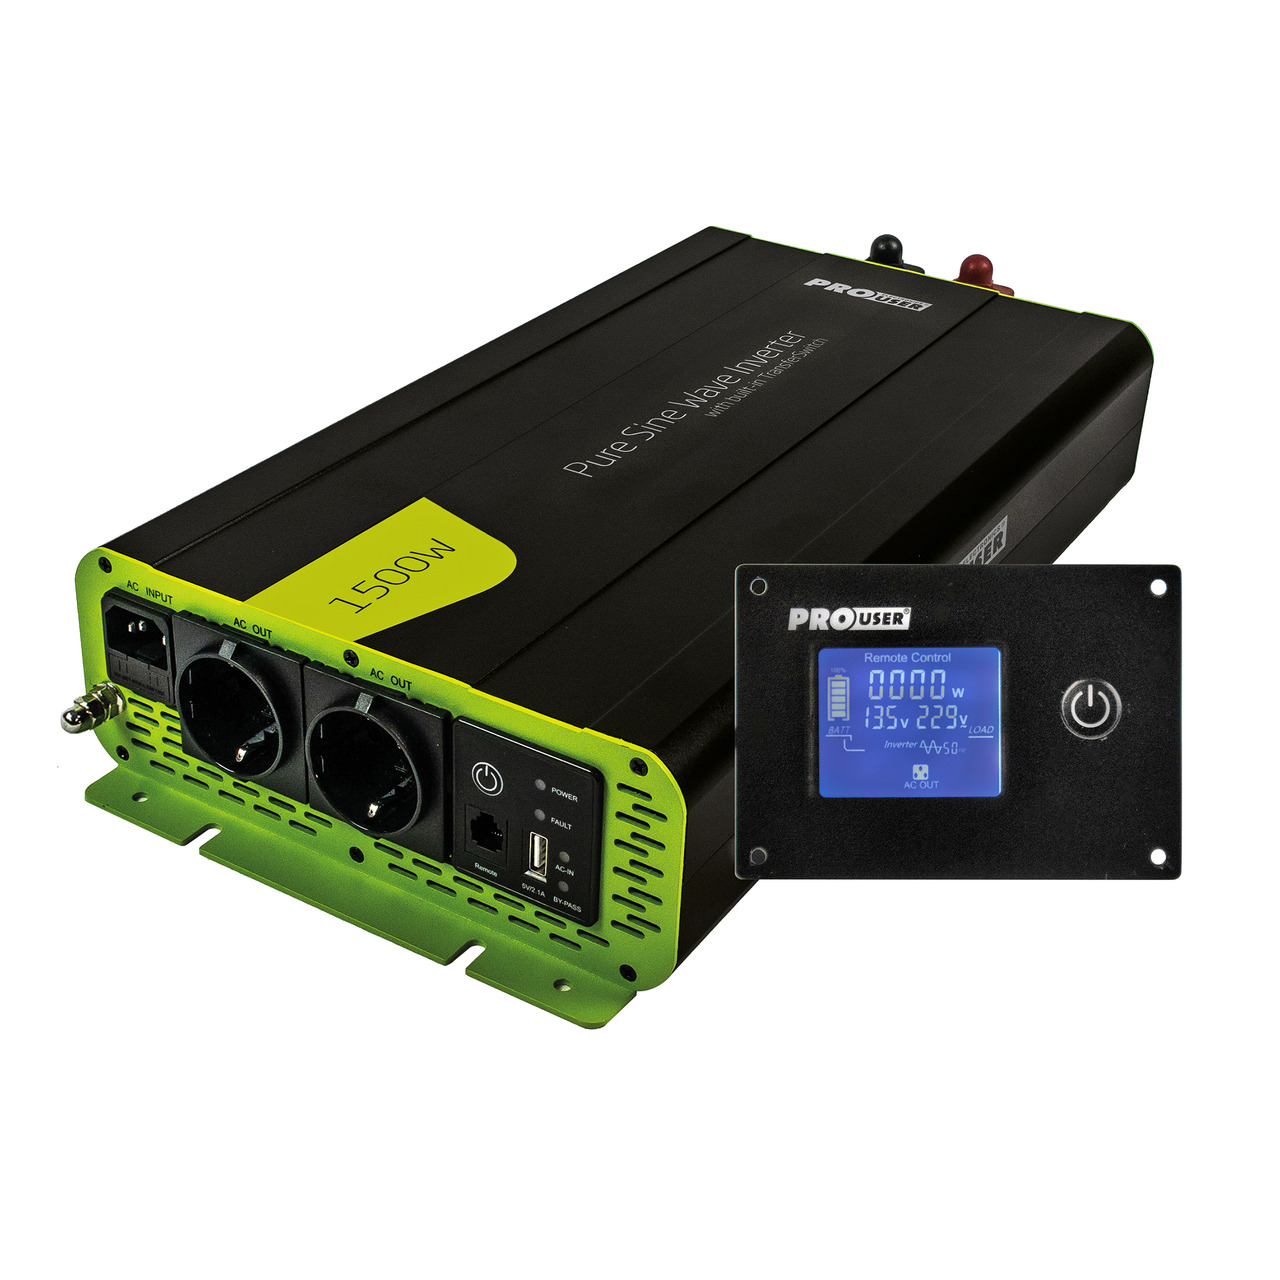 ProUser Spannungswandler PSI1500TX mit 1500 W- 12 V auf 230 V- mit Display und reiner Sinuswelle